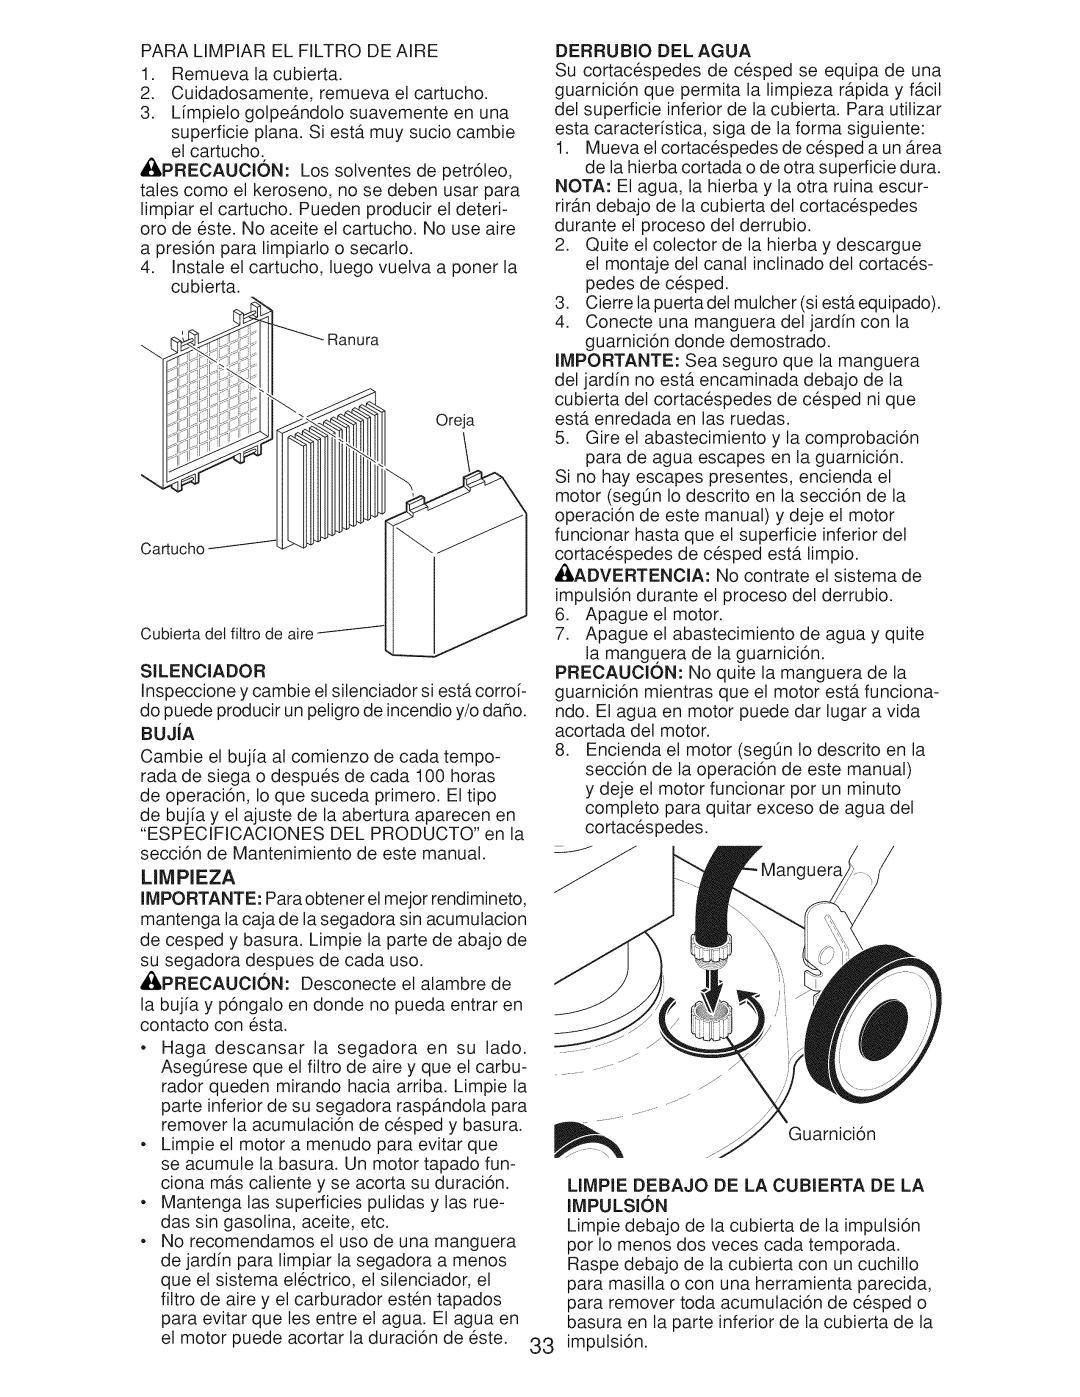 Craftsman Gcv160 manual PARALIMPIARELFILTRODEAIRE 1.Remuevalacubierta, Cuidadosamente,remuevaelcartucho, Limpieza 